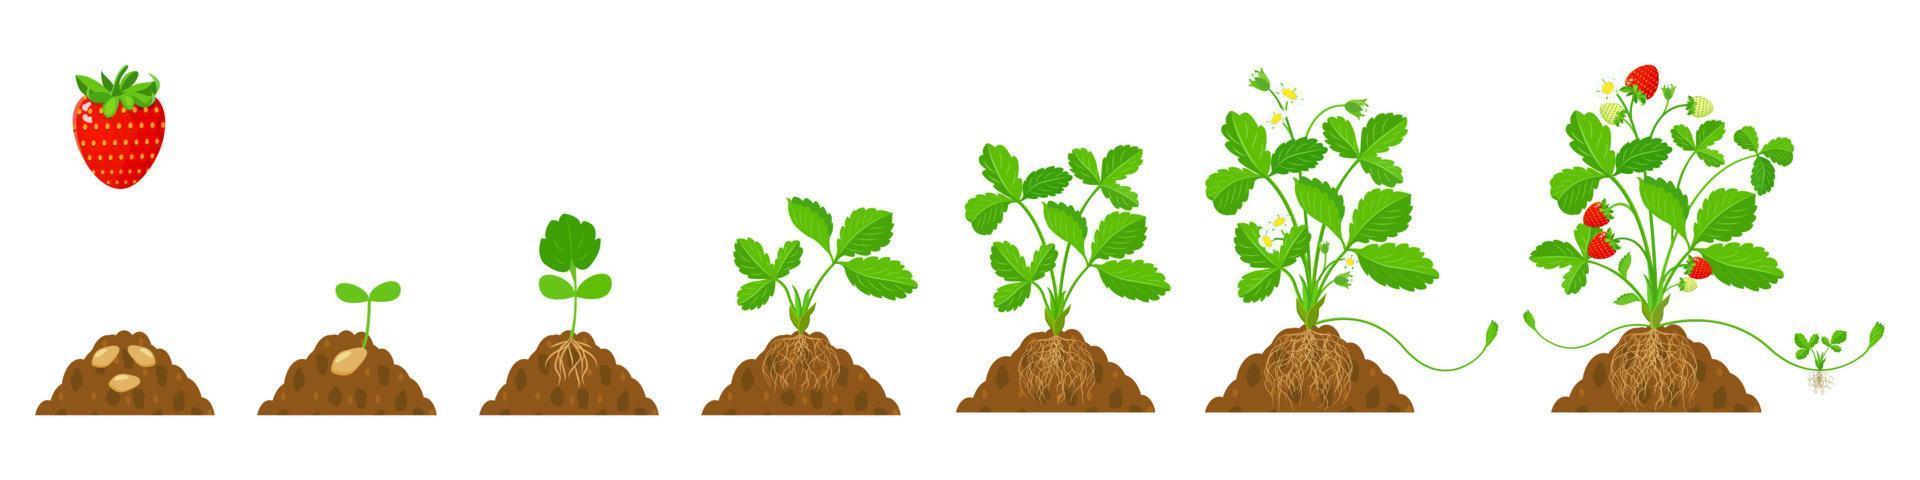 cultivo de fresas en el suelo con sistema de raíces en etapas. ilustración plana del ciclo de cultivo de cultivos. vector